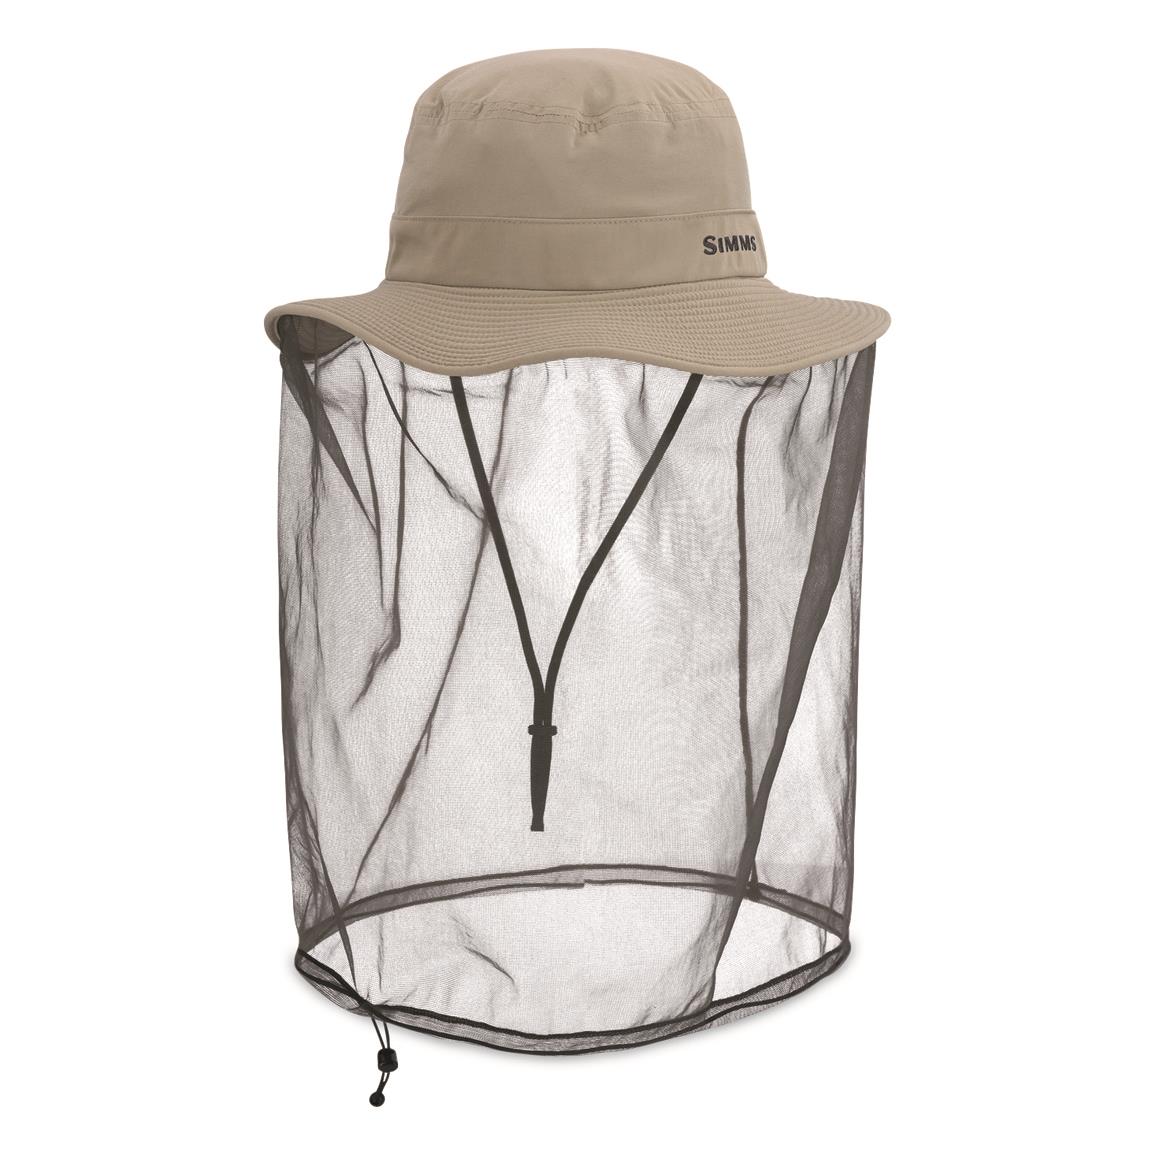 Simms Men's BugStopper Net Sombrero Hat, Stone